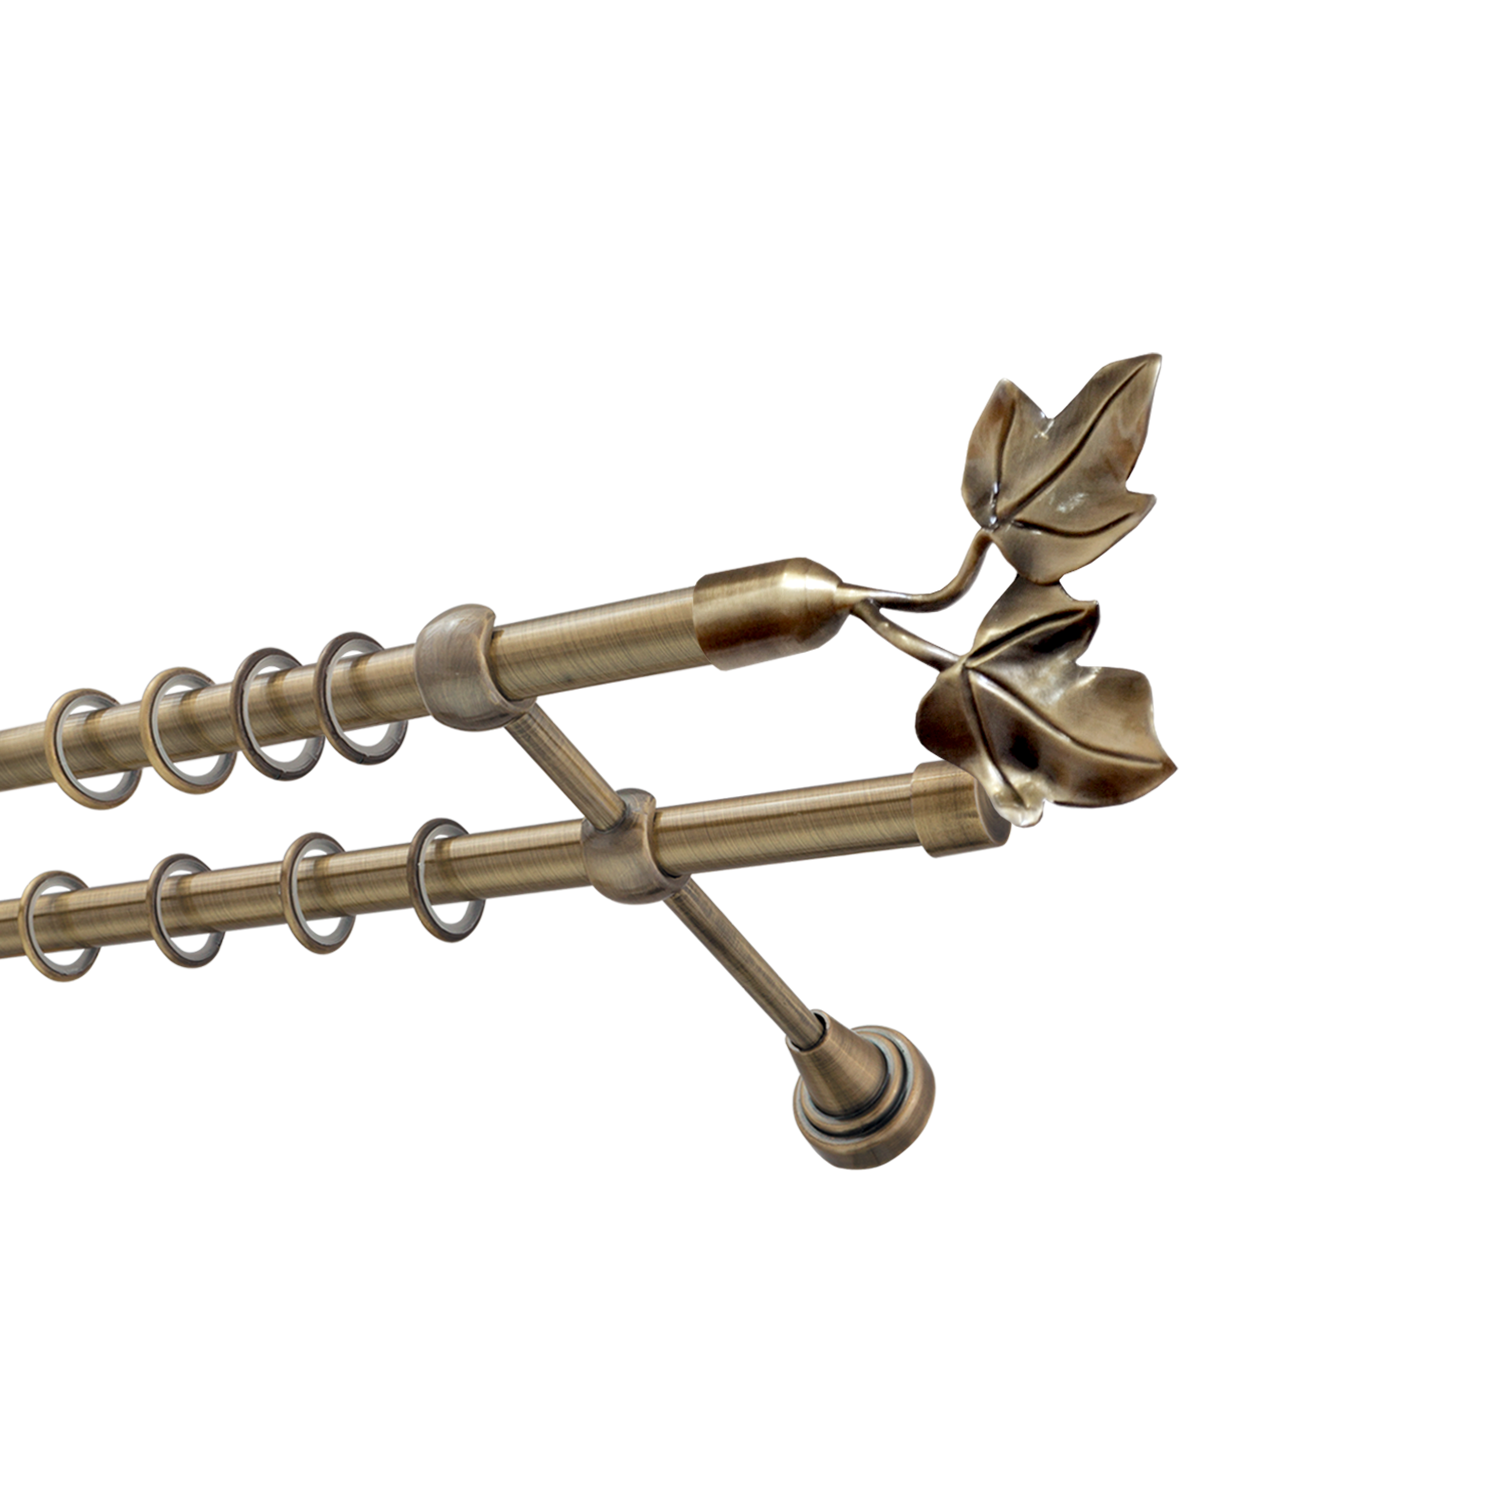 Металлический карниз для штор Листья, двухрядный 16/16 мм, бронза, гладкая штанга, длина 180 см - фото Wikidecor.ru